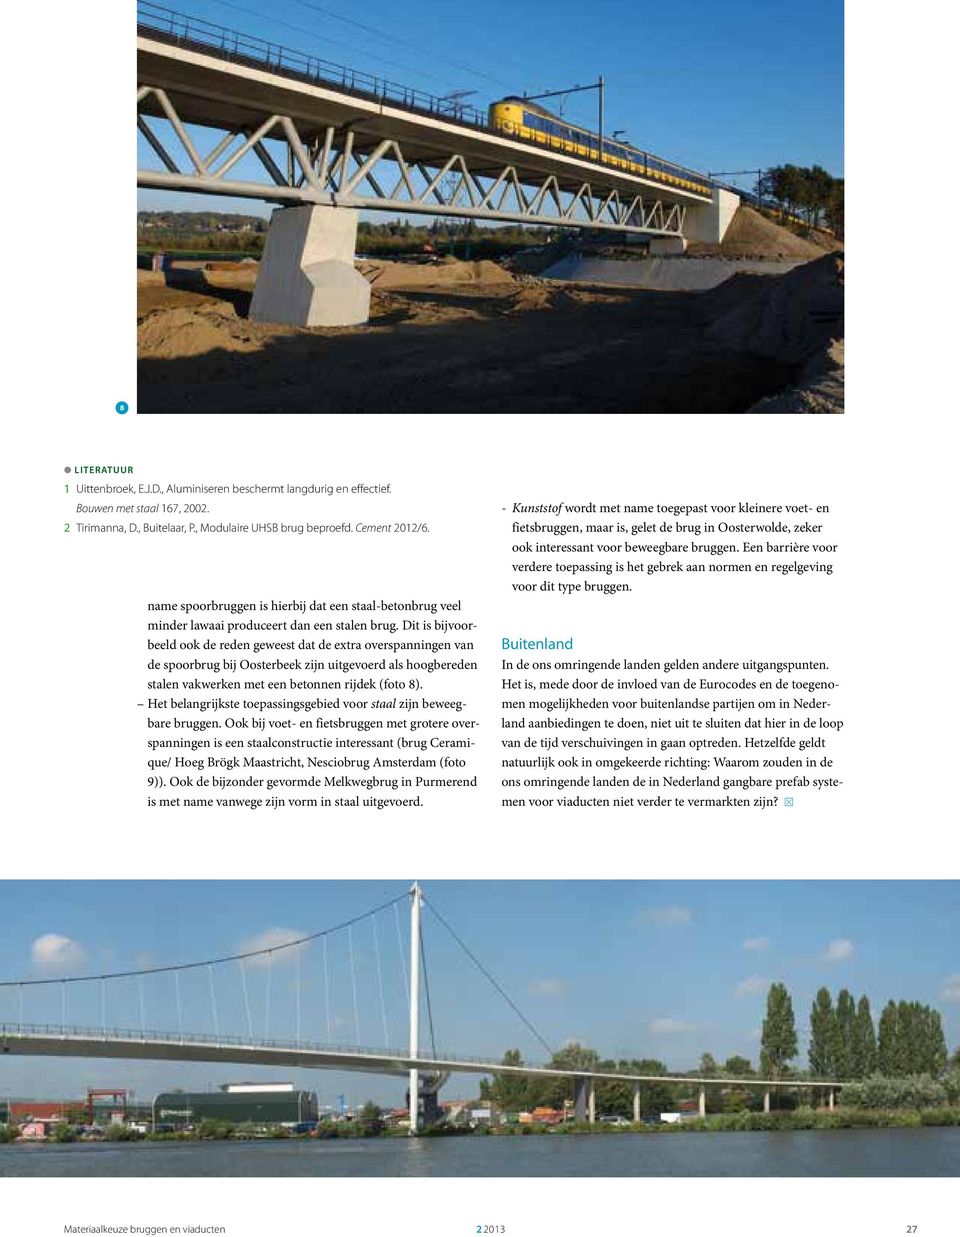 Dit is bijvoorbeeld ook de reden geweest dat de extra overspanningen van de spoorbrug bij Oosterbeek zijn uitgevoerd als hoogbereden stalen vakwerken met een betonnen rijdek (foto 8).